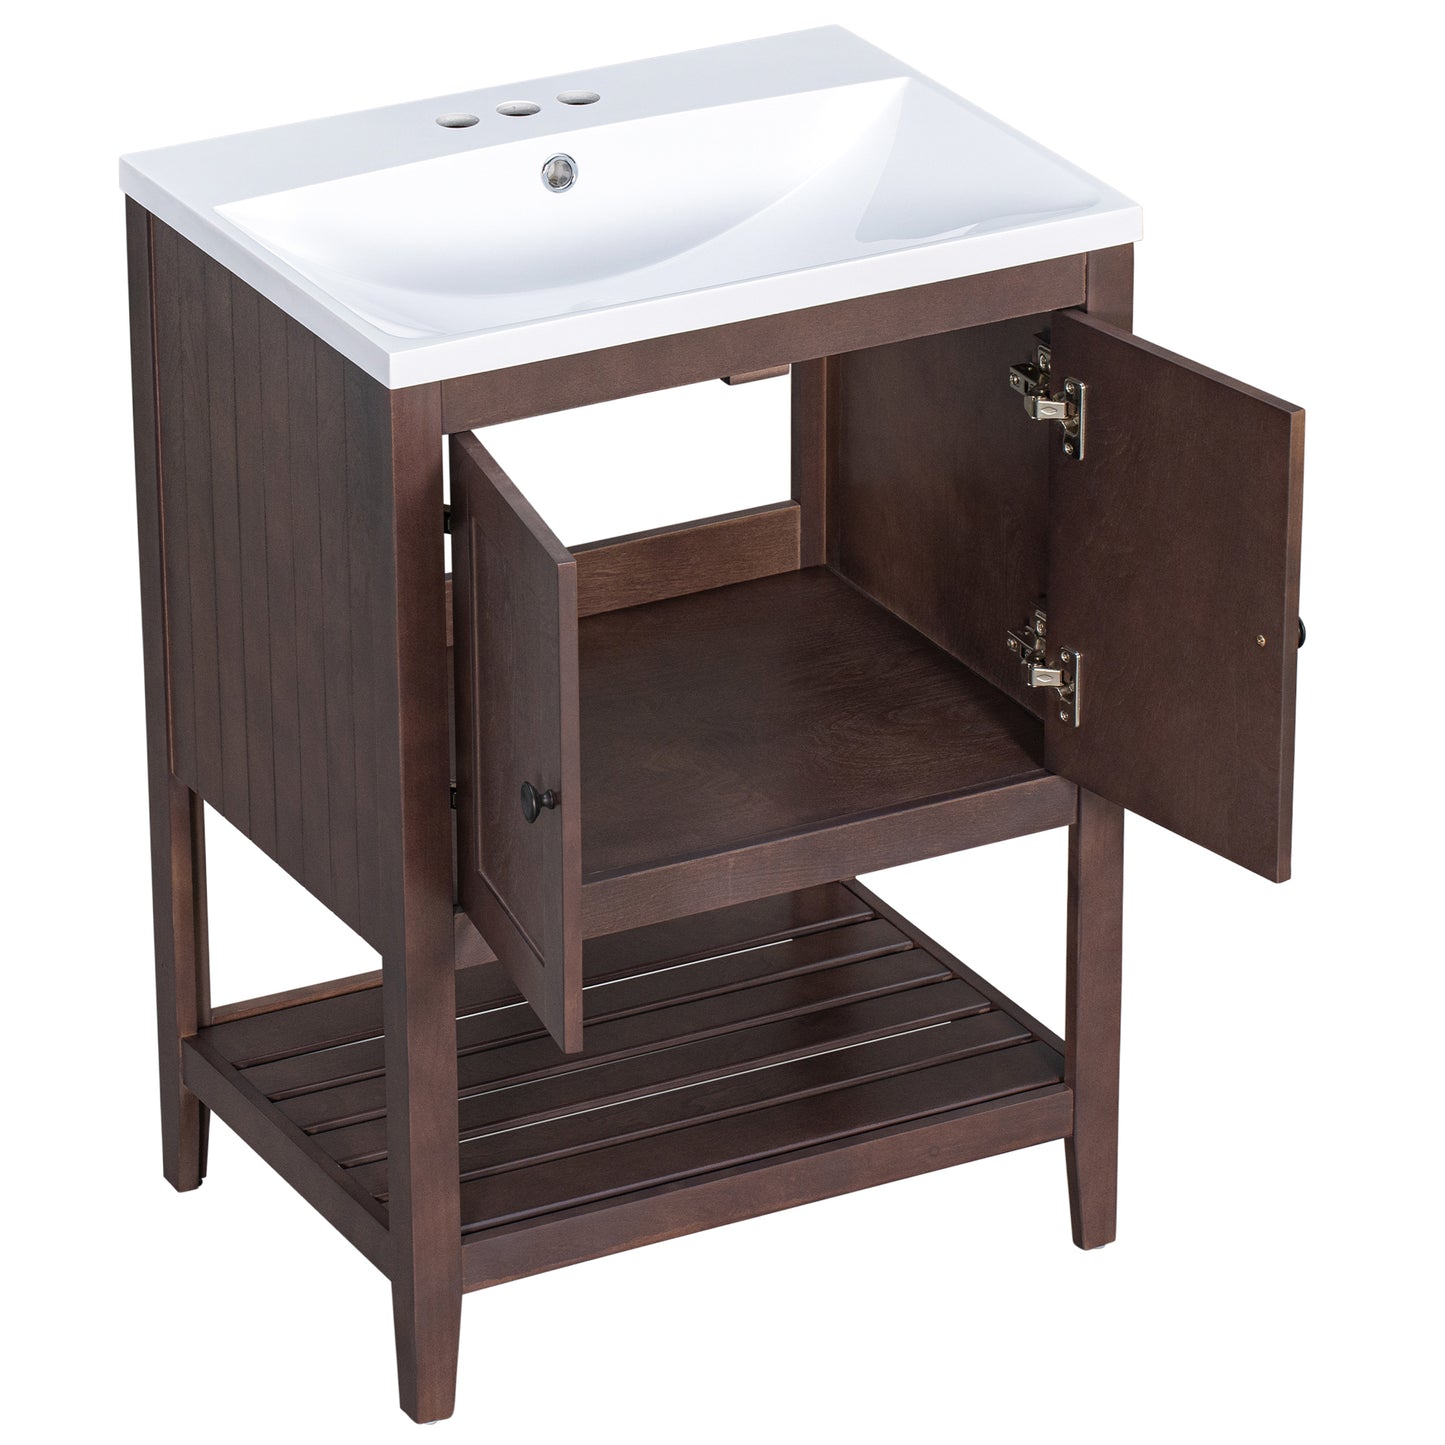 [VIDEO] 24" Brown Modern Sleek Bathroom Vanity Elegant Ceramic Sink with Solid Wood Frame Open Style Shelf